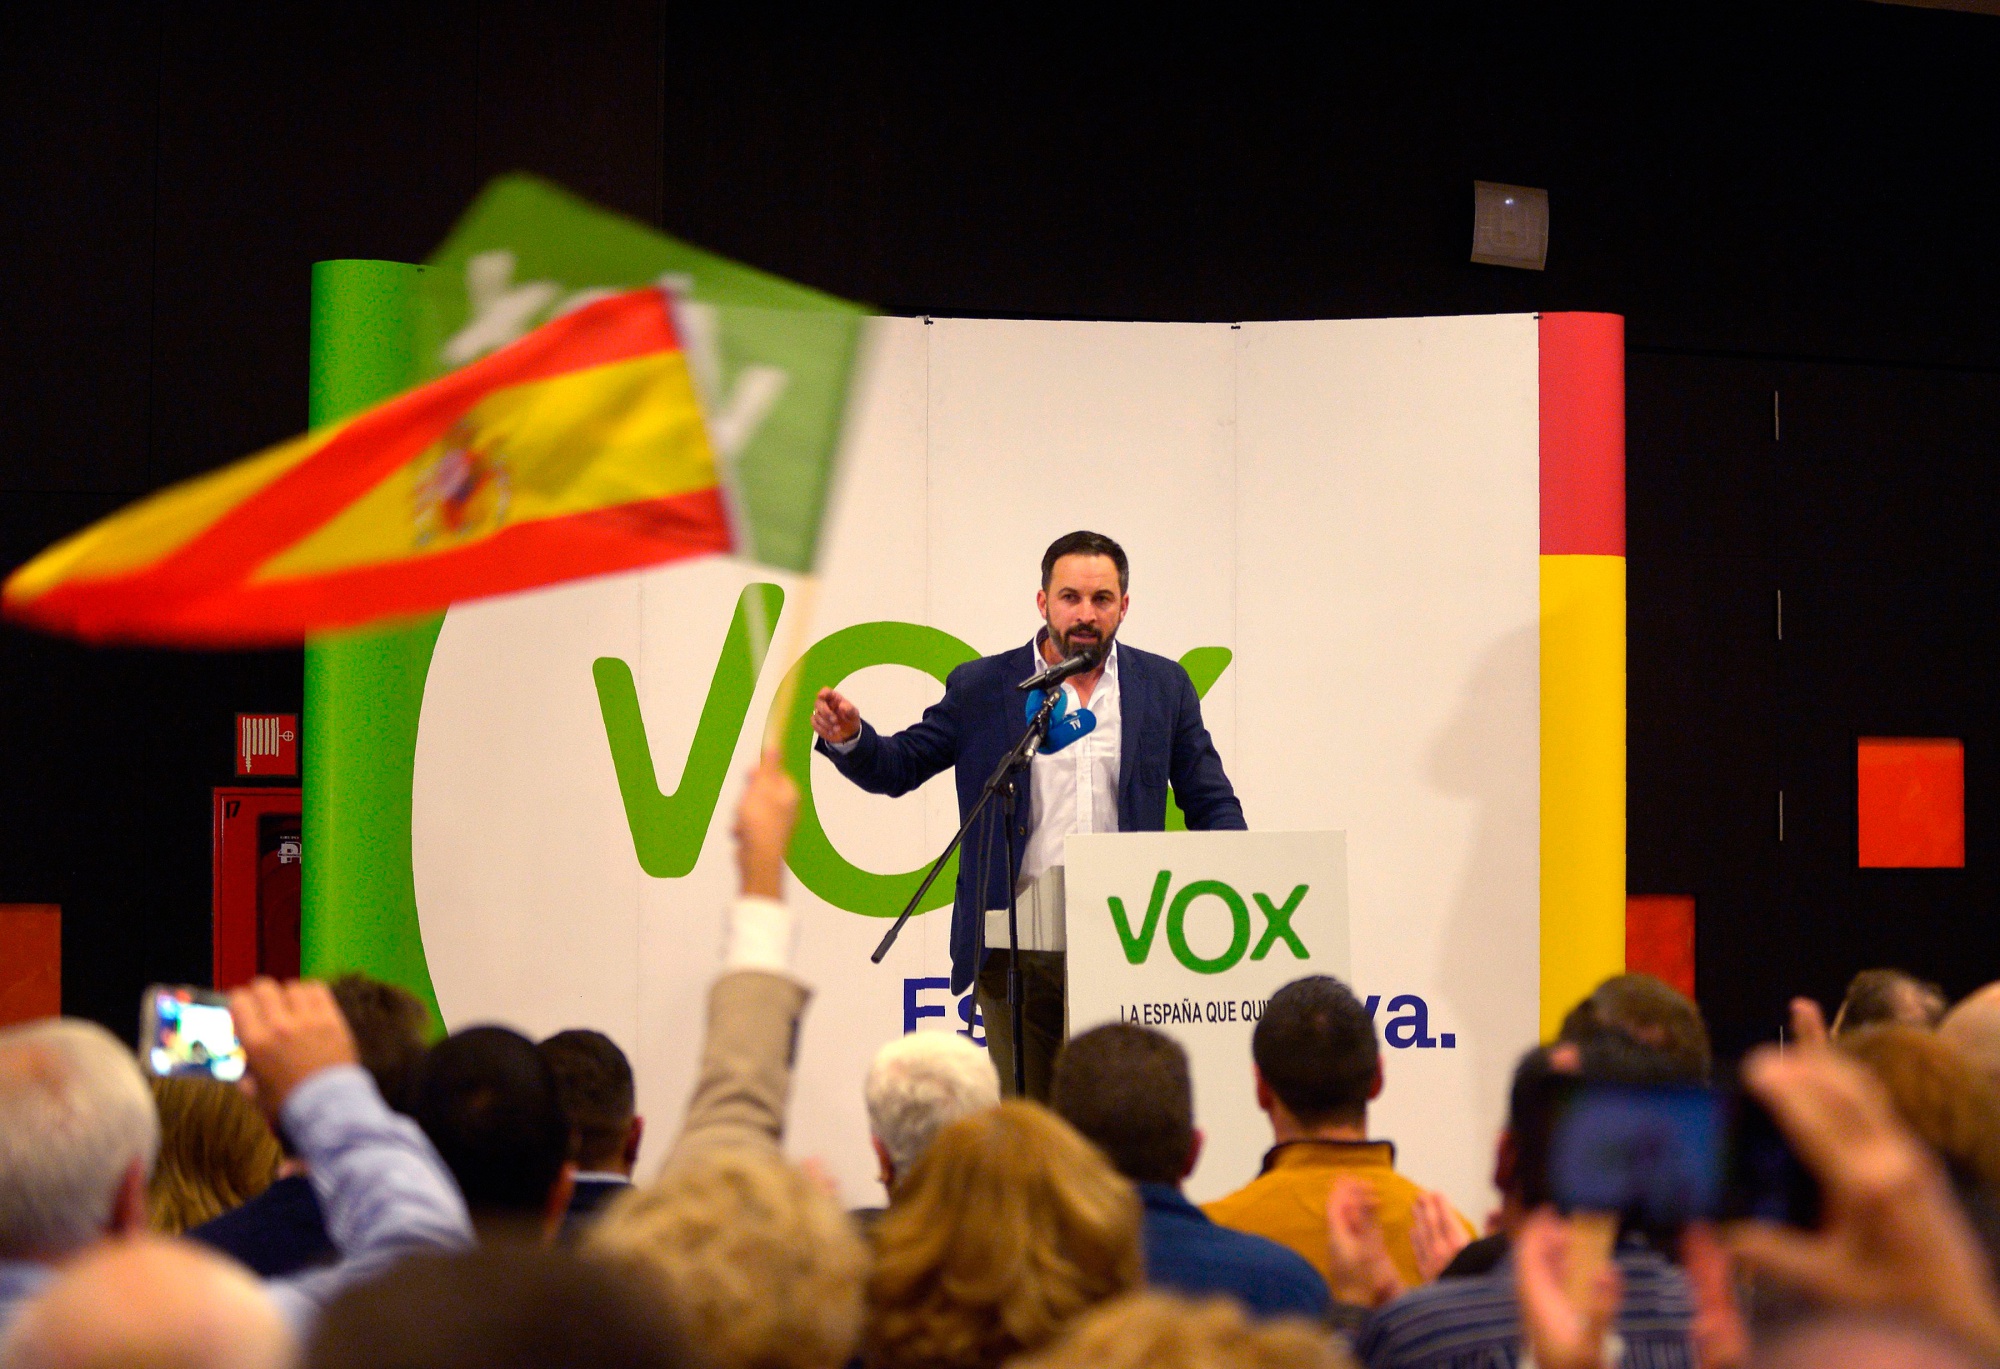 Ευρωεκλογές 2019: Επέλαση της Λαϊκής Δεξιάς σε Ισπανία, Γερμανία και Ιταλία